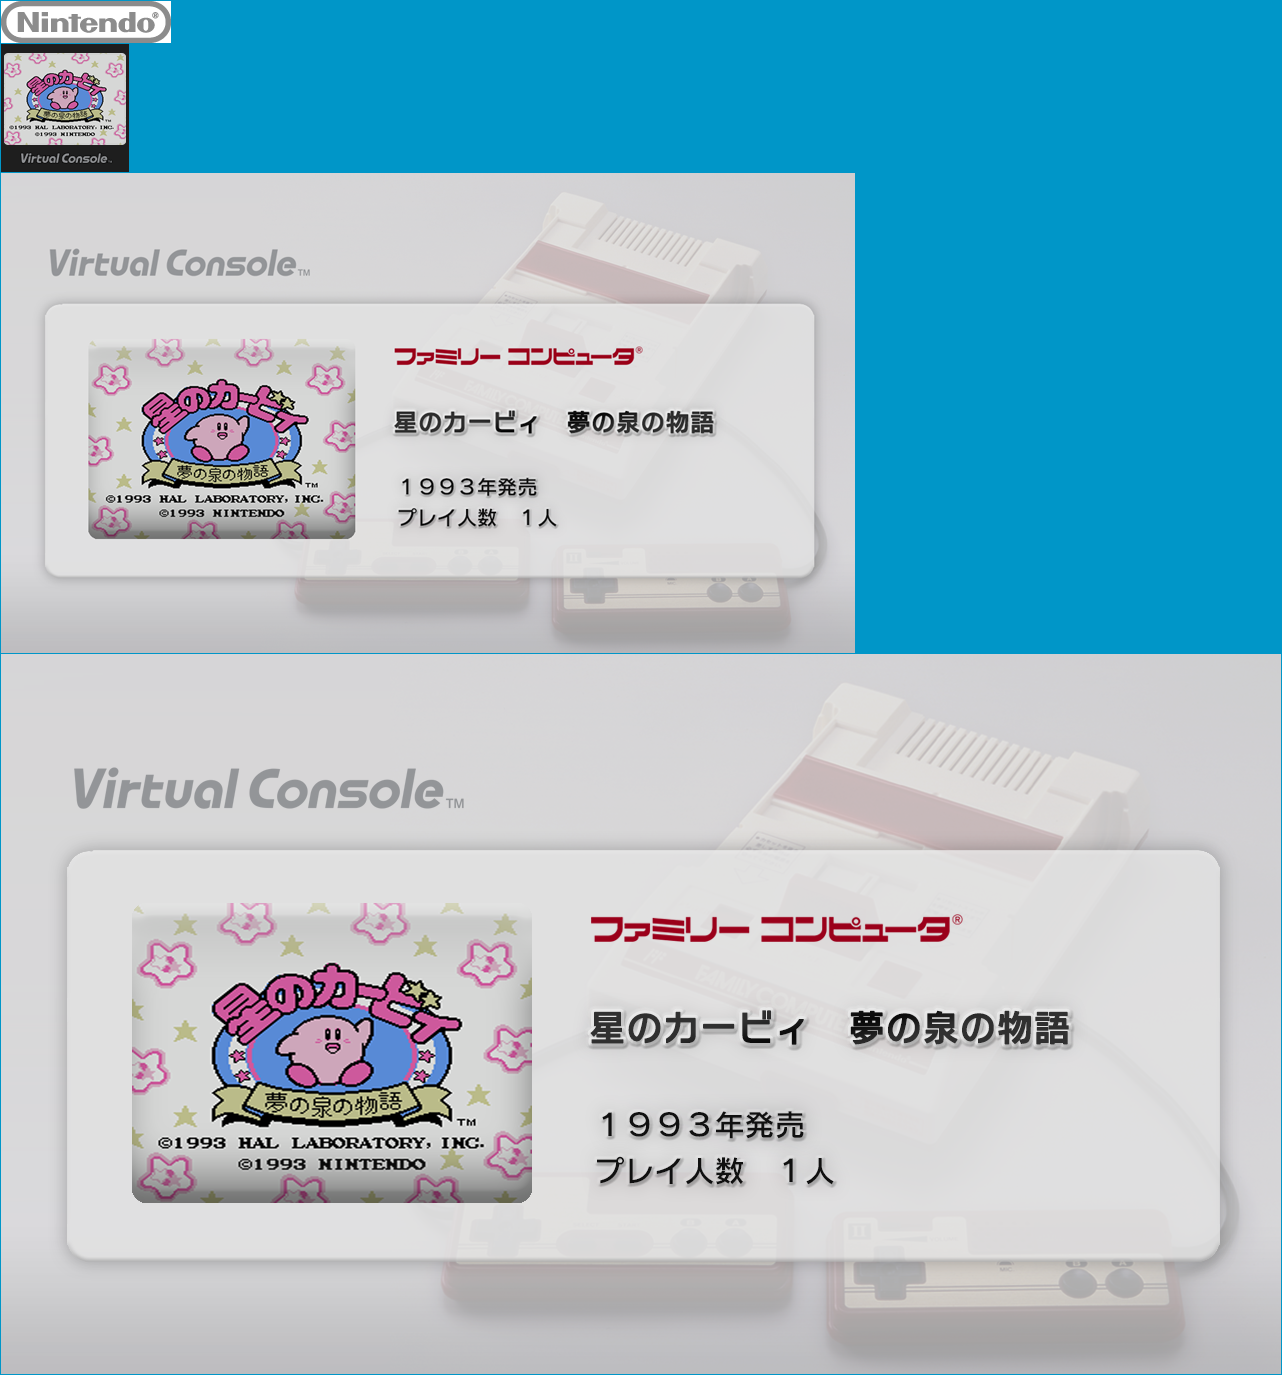 Virtual Console - Hoshi no Kirby: Yume no Izumi no Monogatari